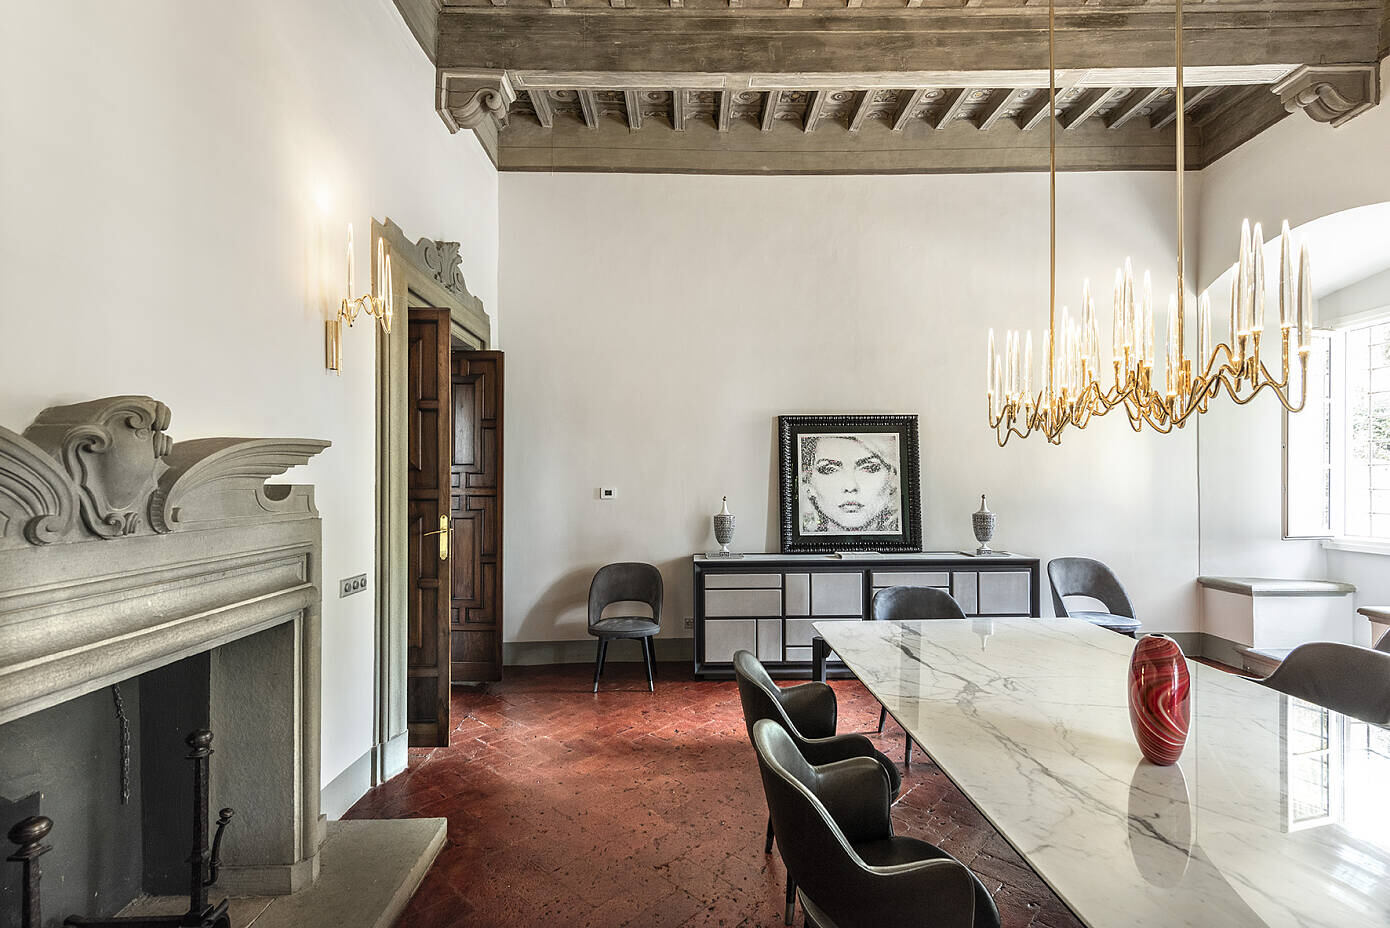 Villa Rinascimentale Sulle Colline di Firenze by Sammarro Architecture Studio